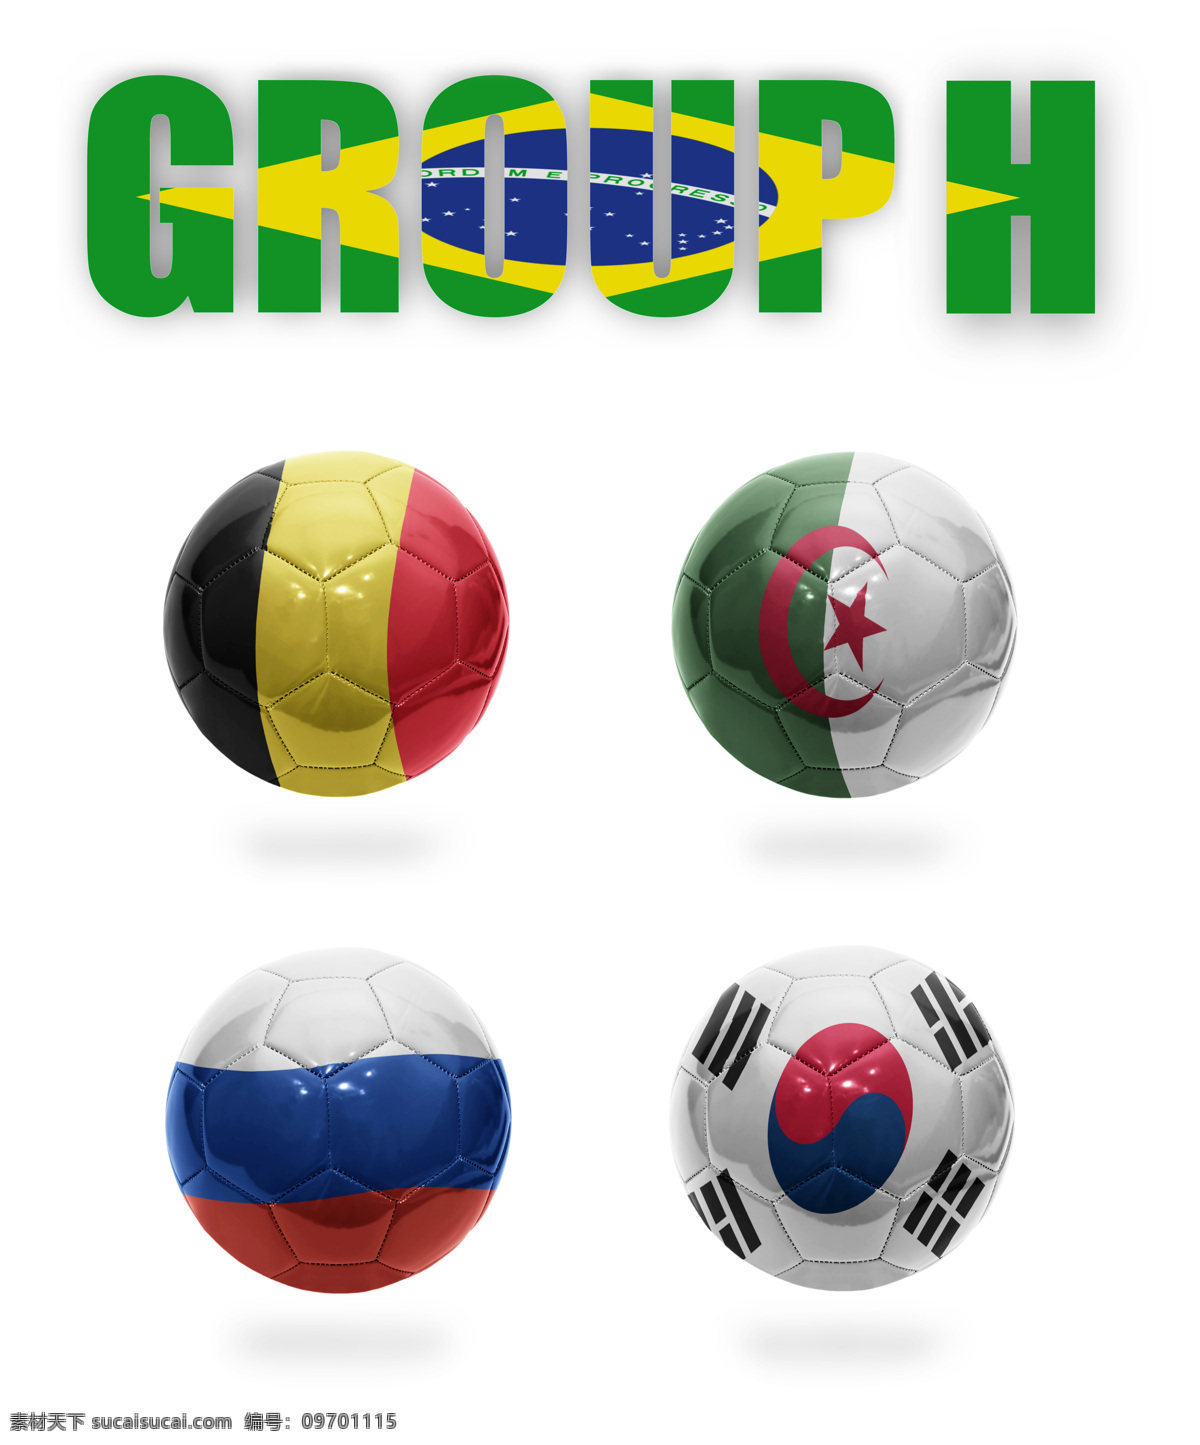 巴西 世界杯 参赛 国家 韩国 德国 俄罗斯 足球 国旗 主题 世界杯素材 世界杯国家 体育运动 生活百科 白色